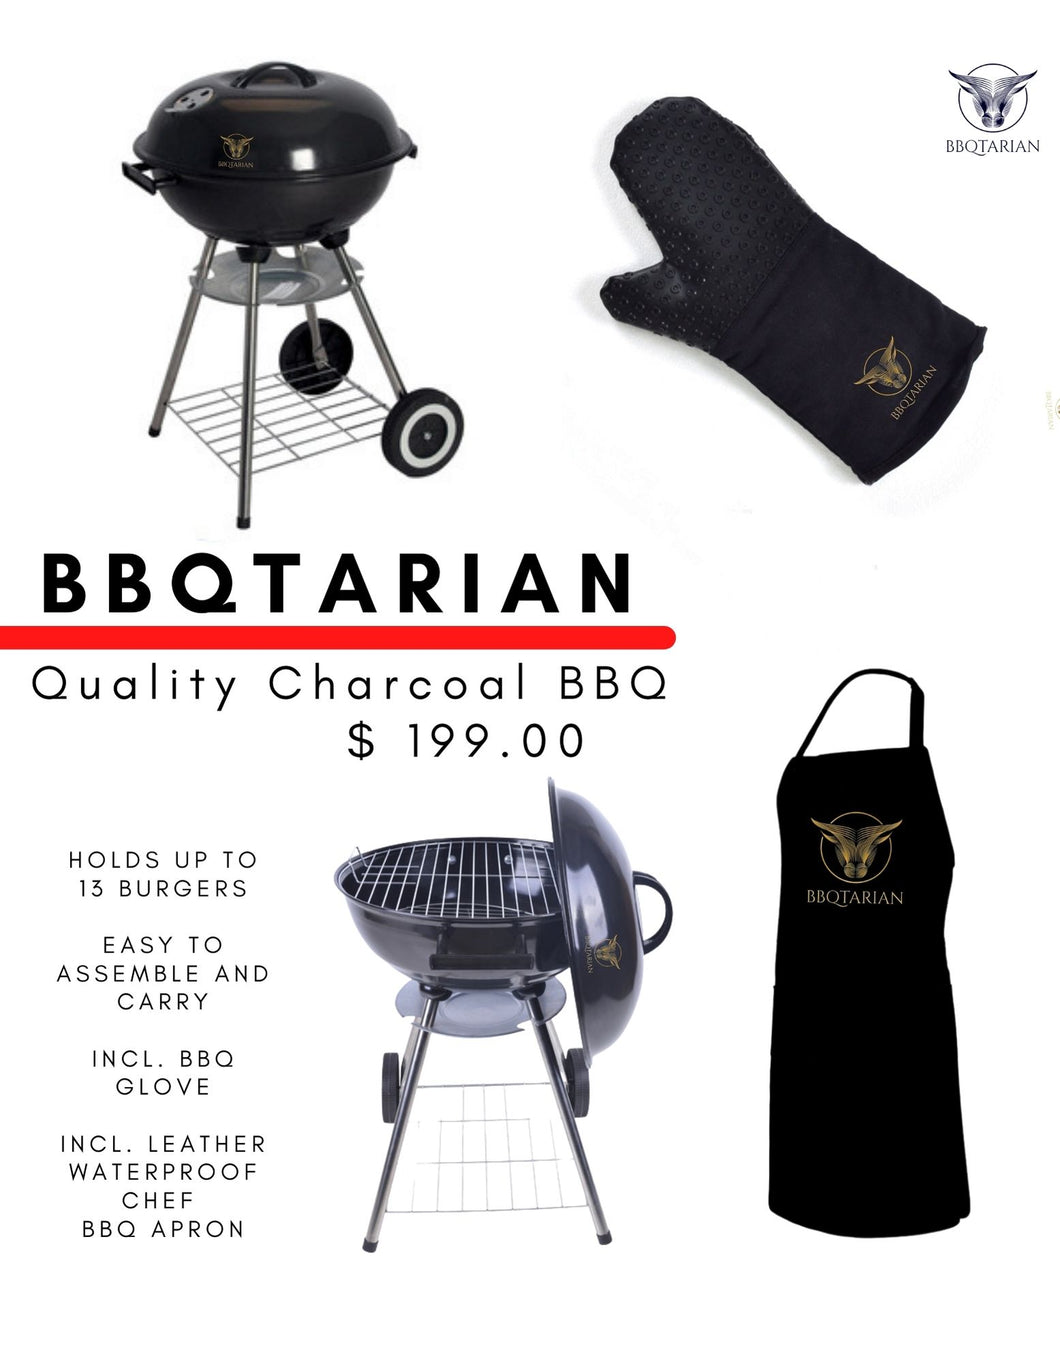 BBQTARIAN - Quality Charcoal BBQ 